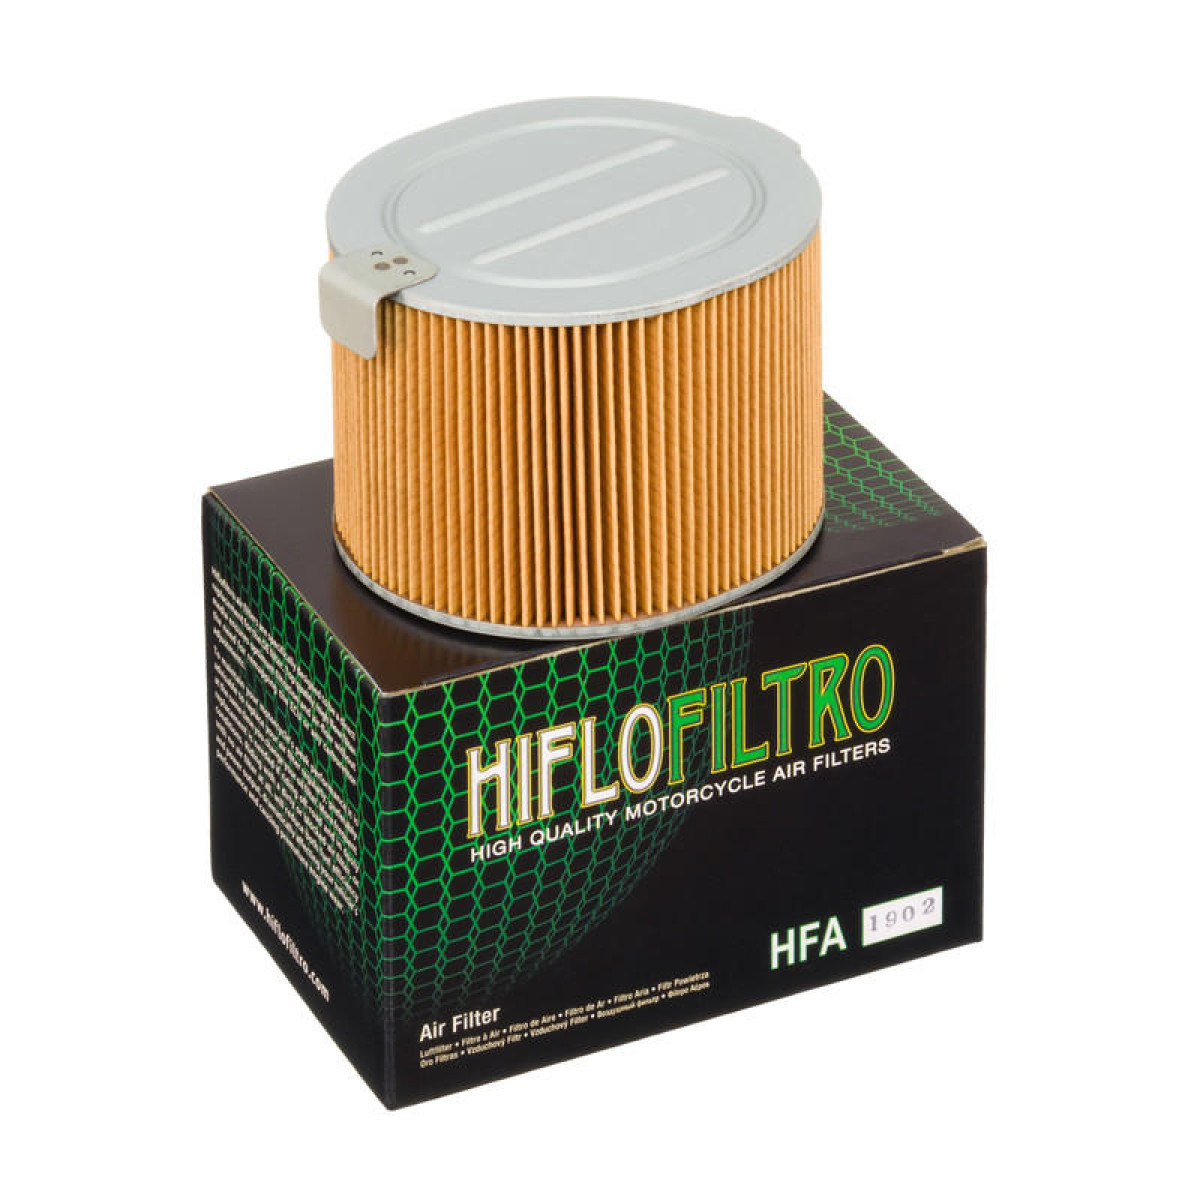 FILTRO AIRE HIFLOFILTRO HFA1902 HONDA CBX 1000 80/83